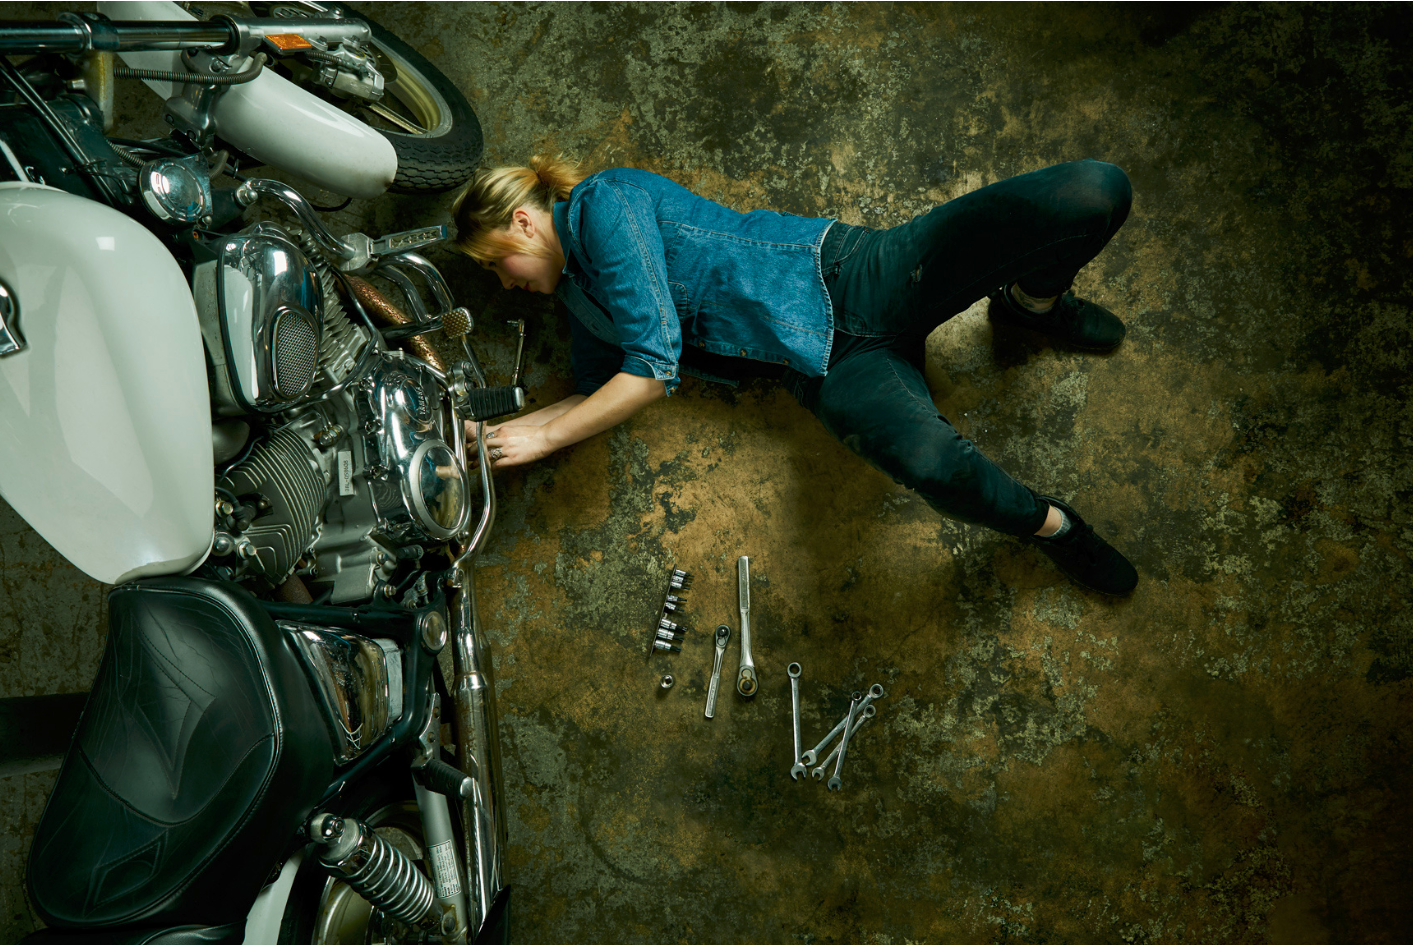 Motorcycle Girls - Garage Portrait